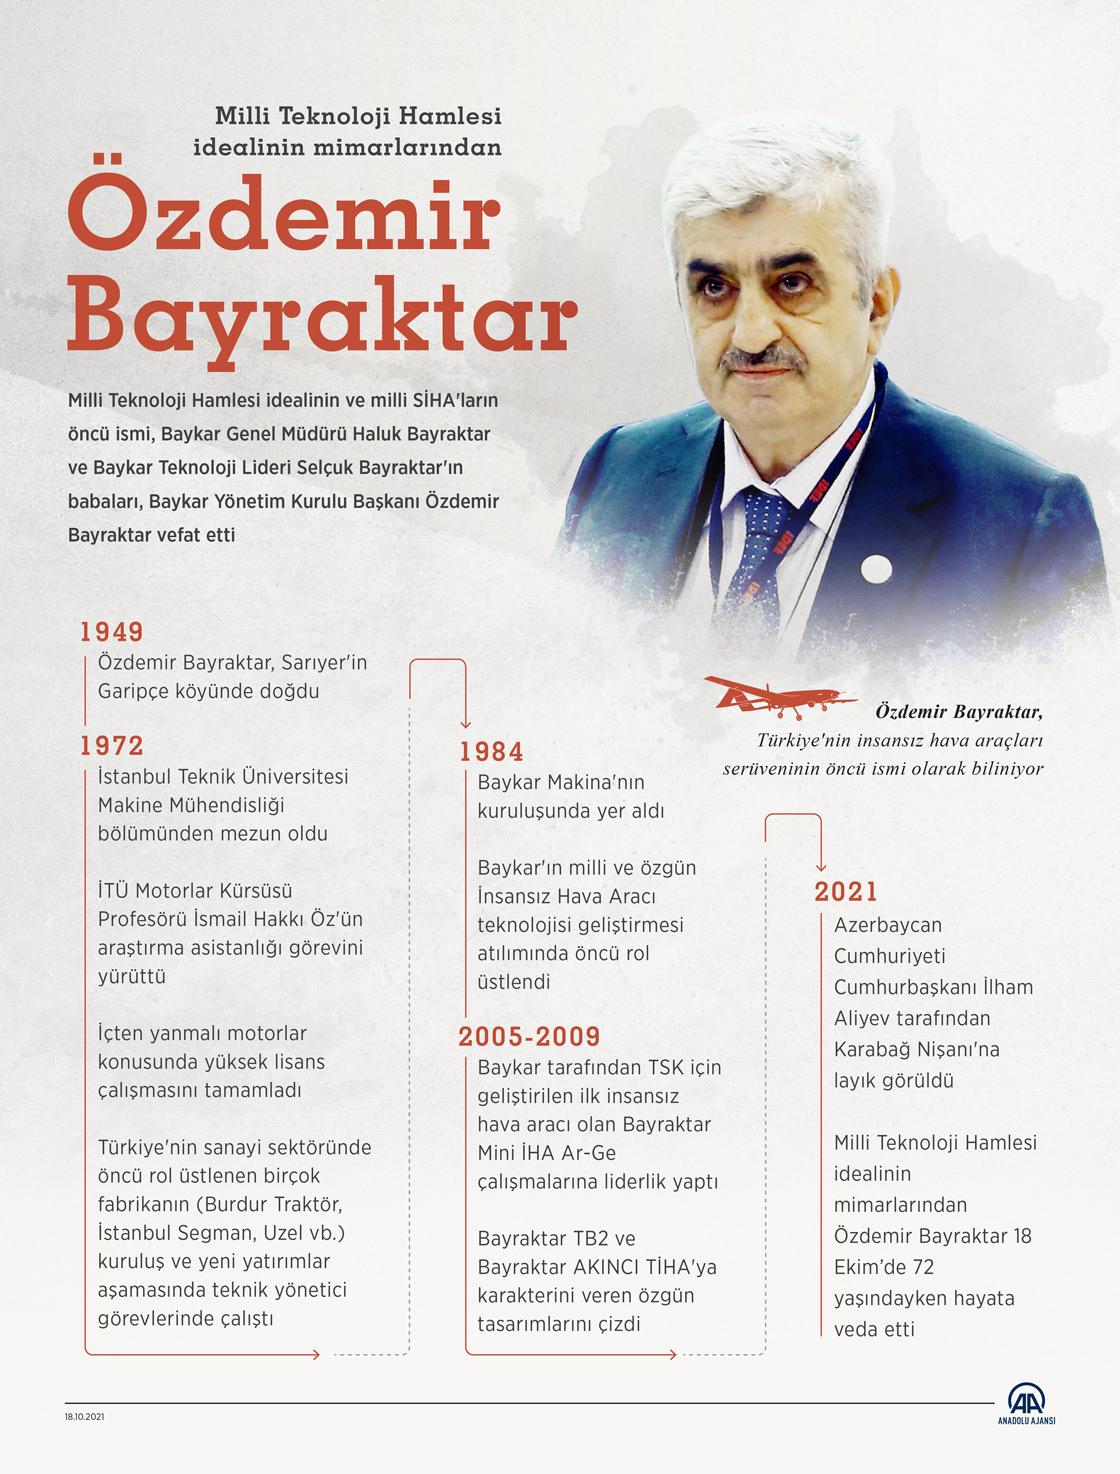 Haluk Bayraktar'ın babası merhum Özdemir Bayraktar